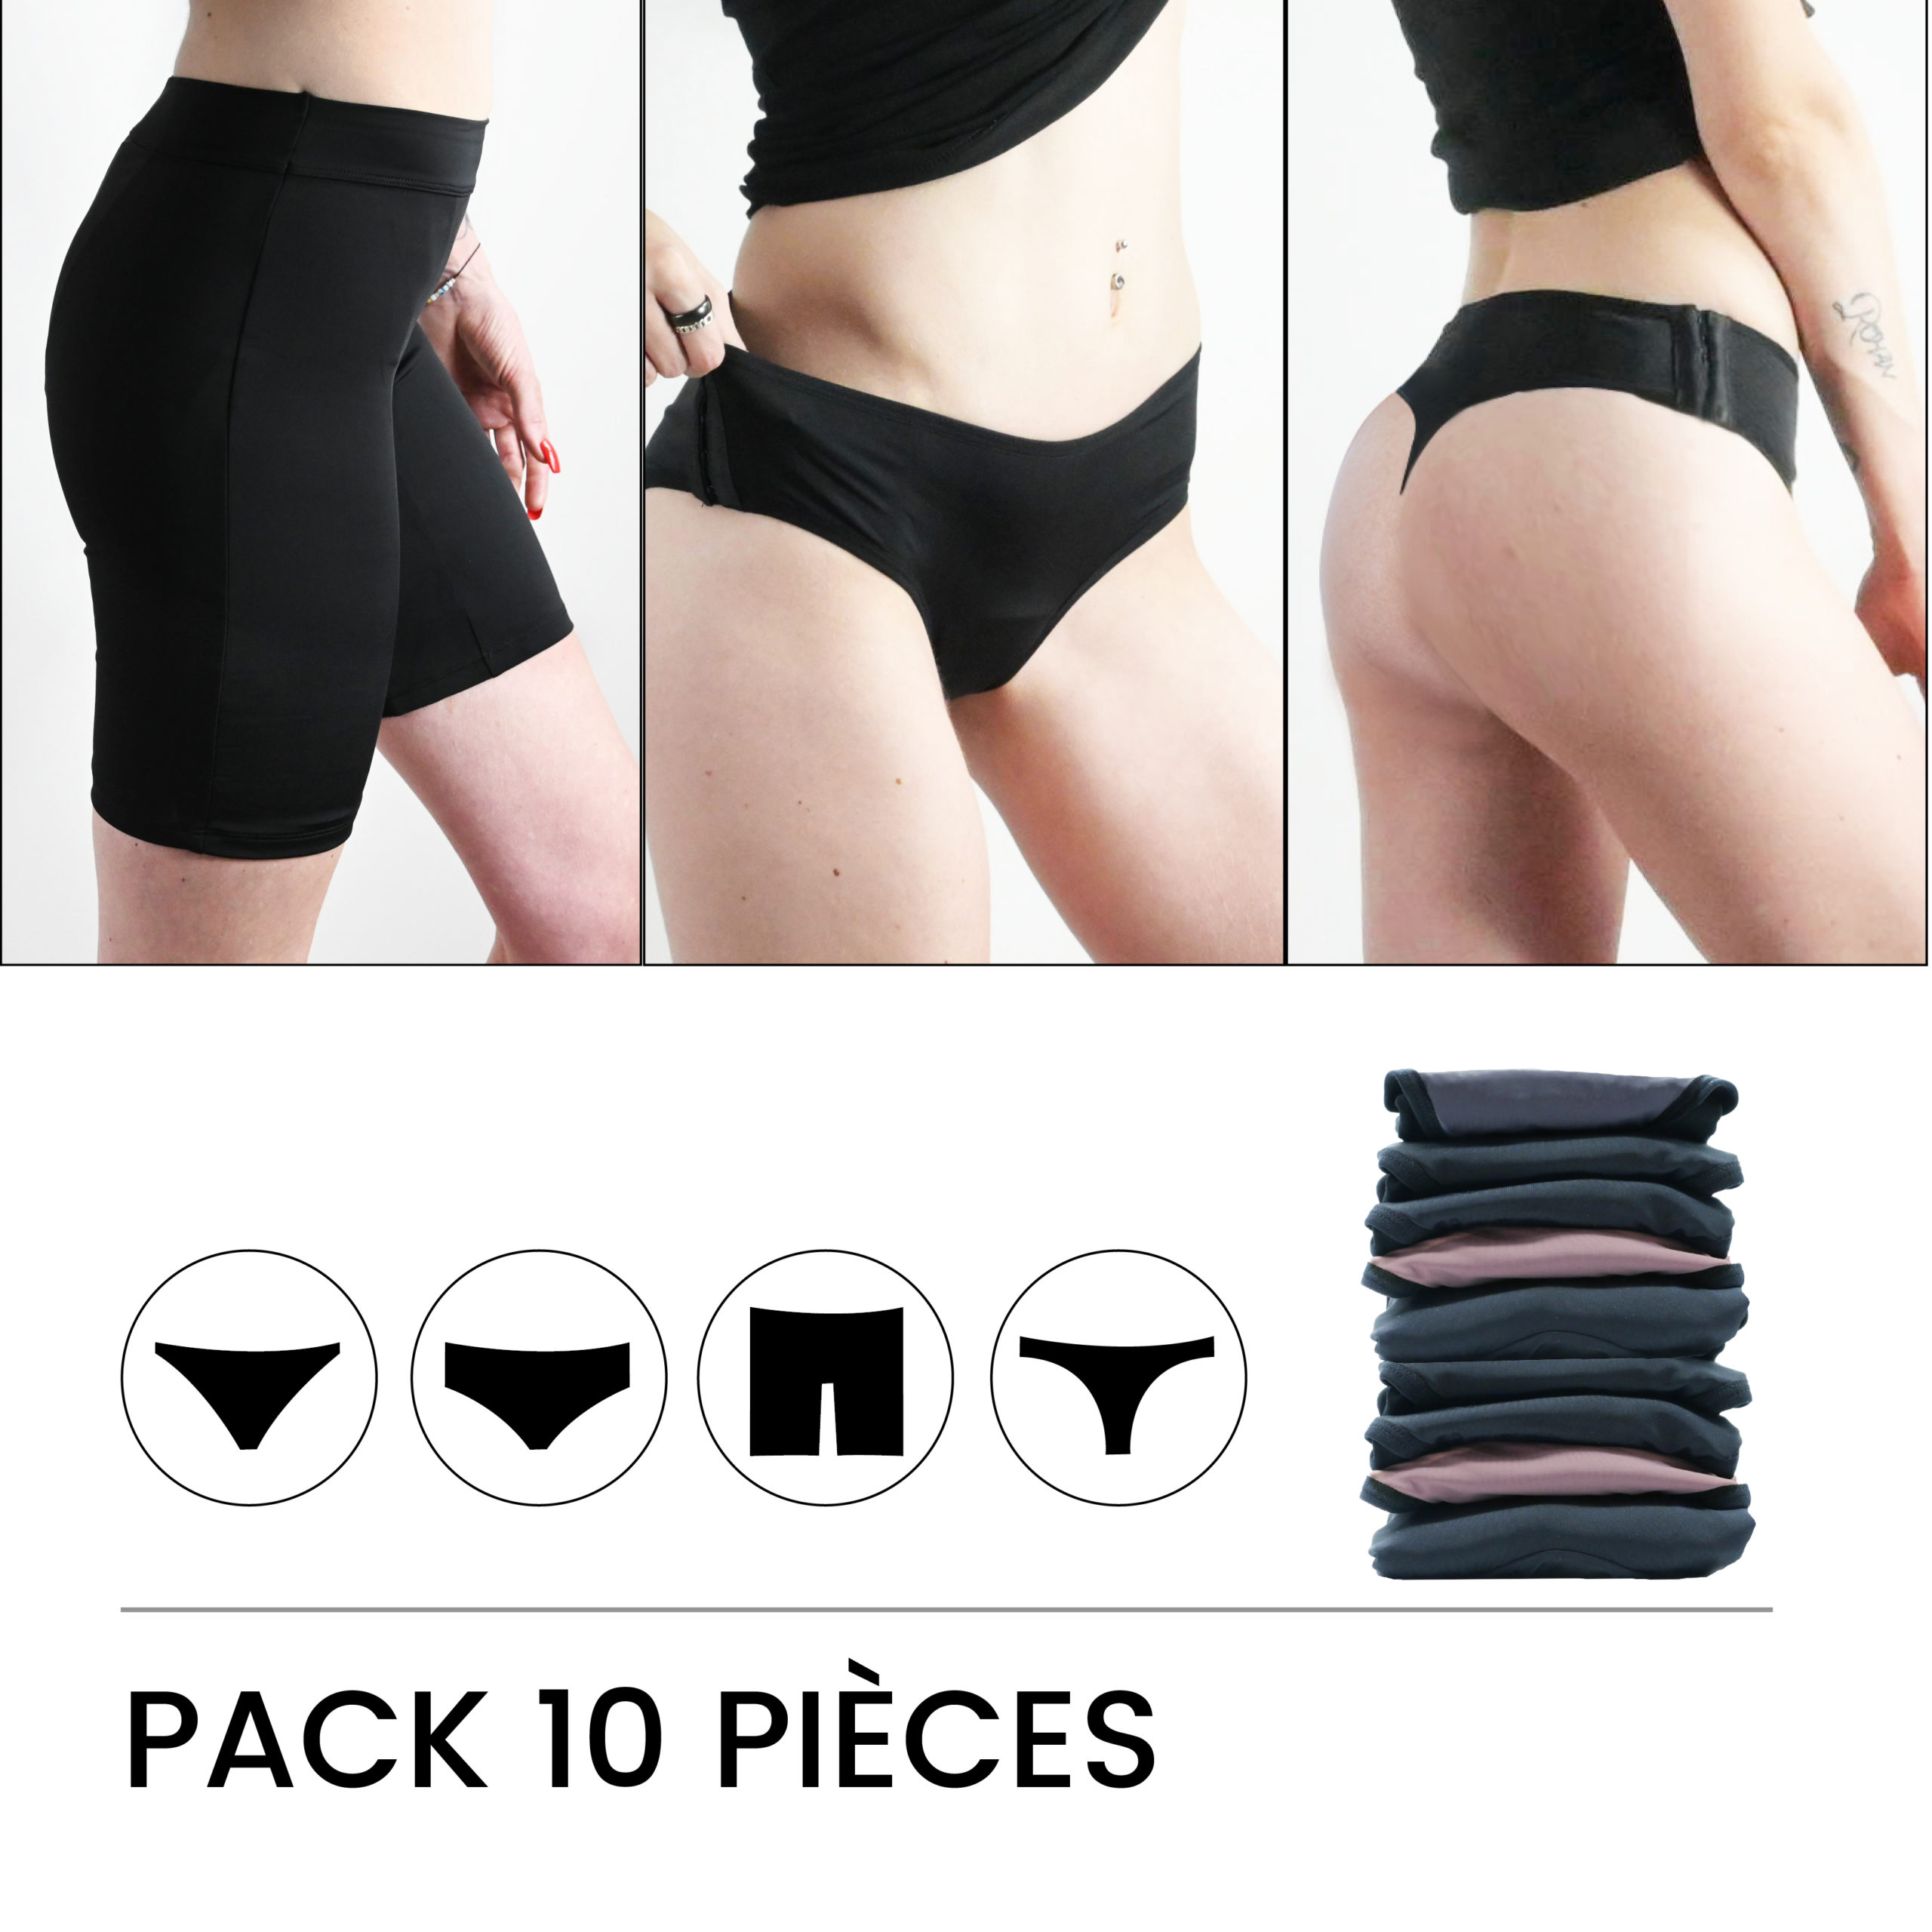 Pack 10 culottes menstruelles ADO au choix - taille 12 ans à 16 ans